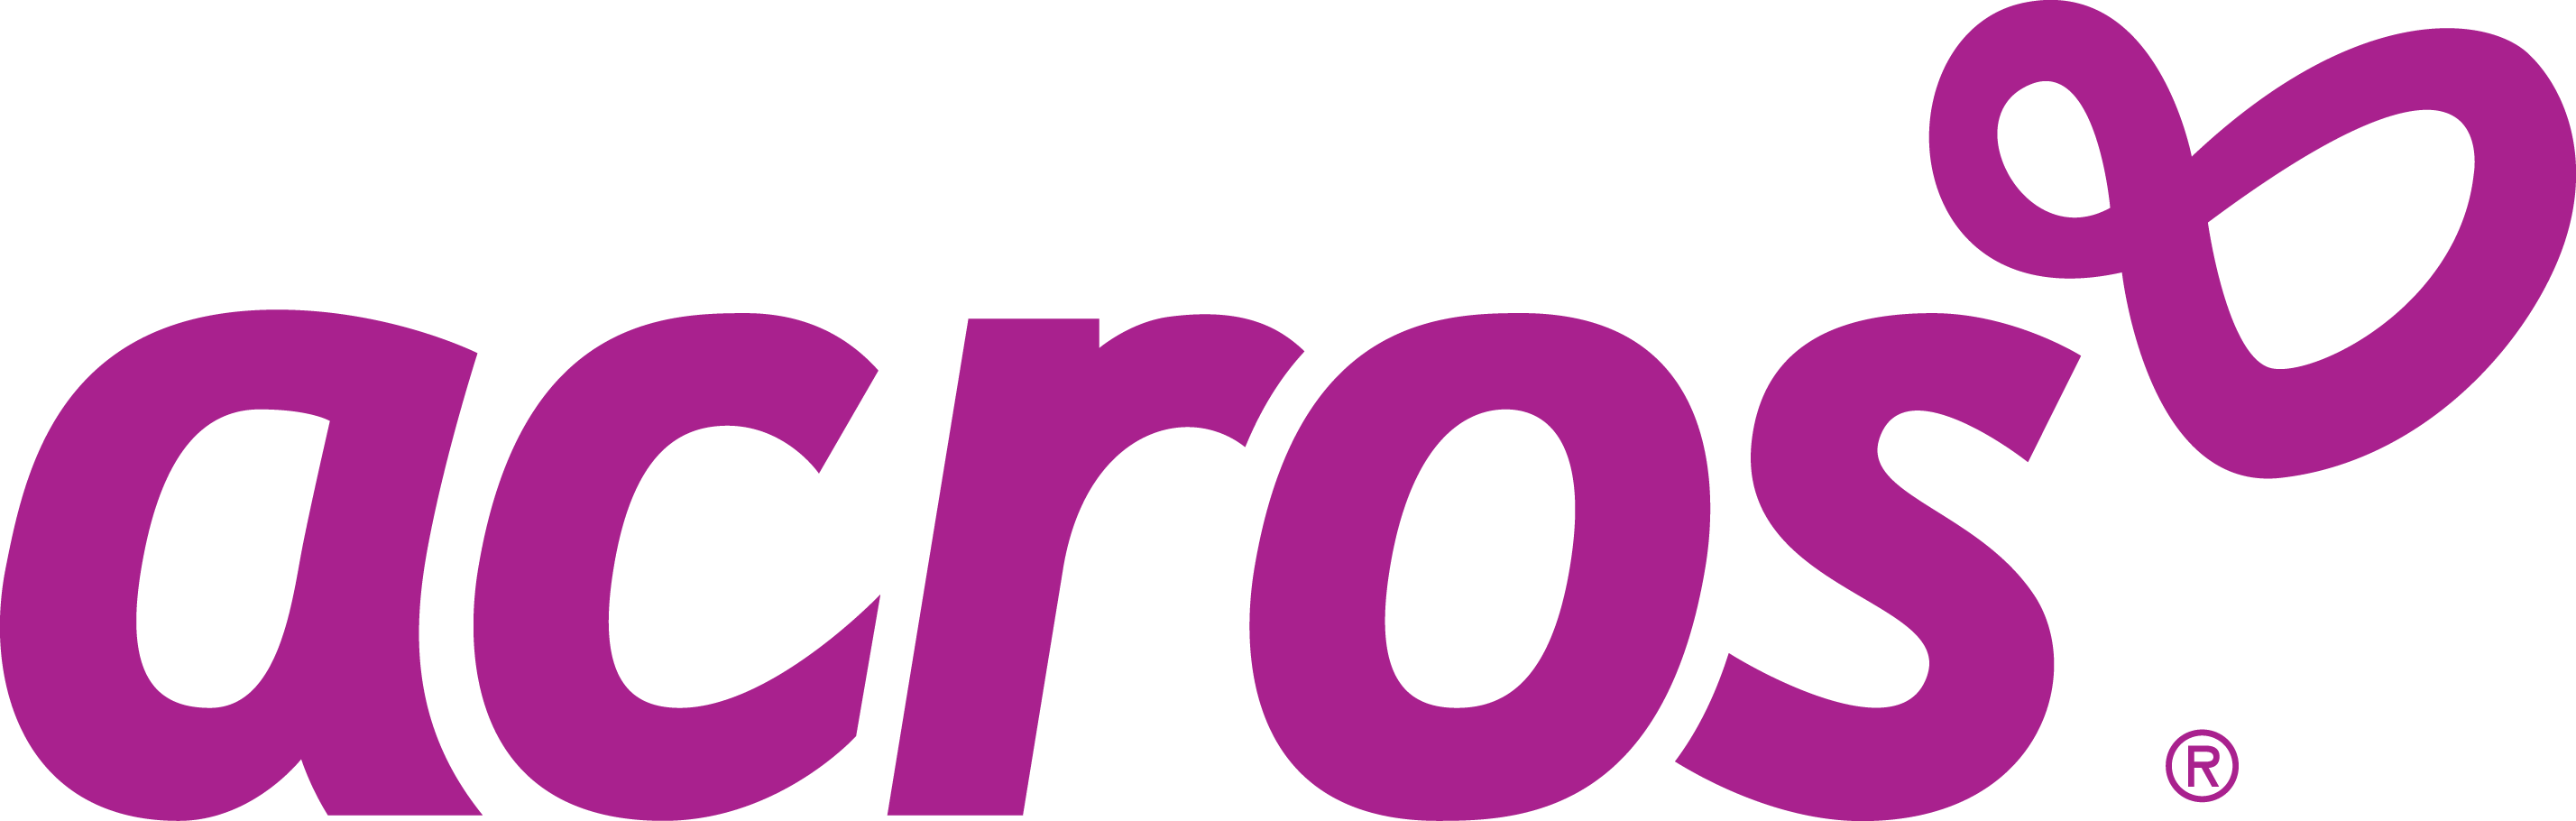 Acros brand